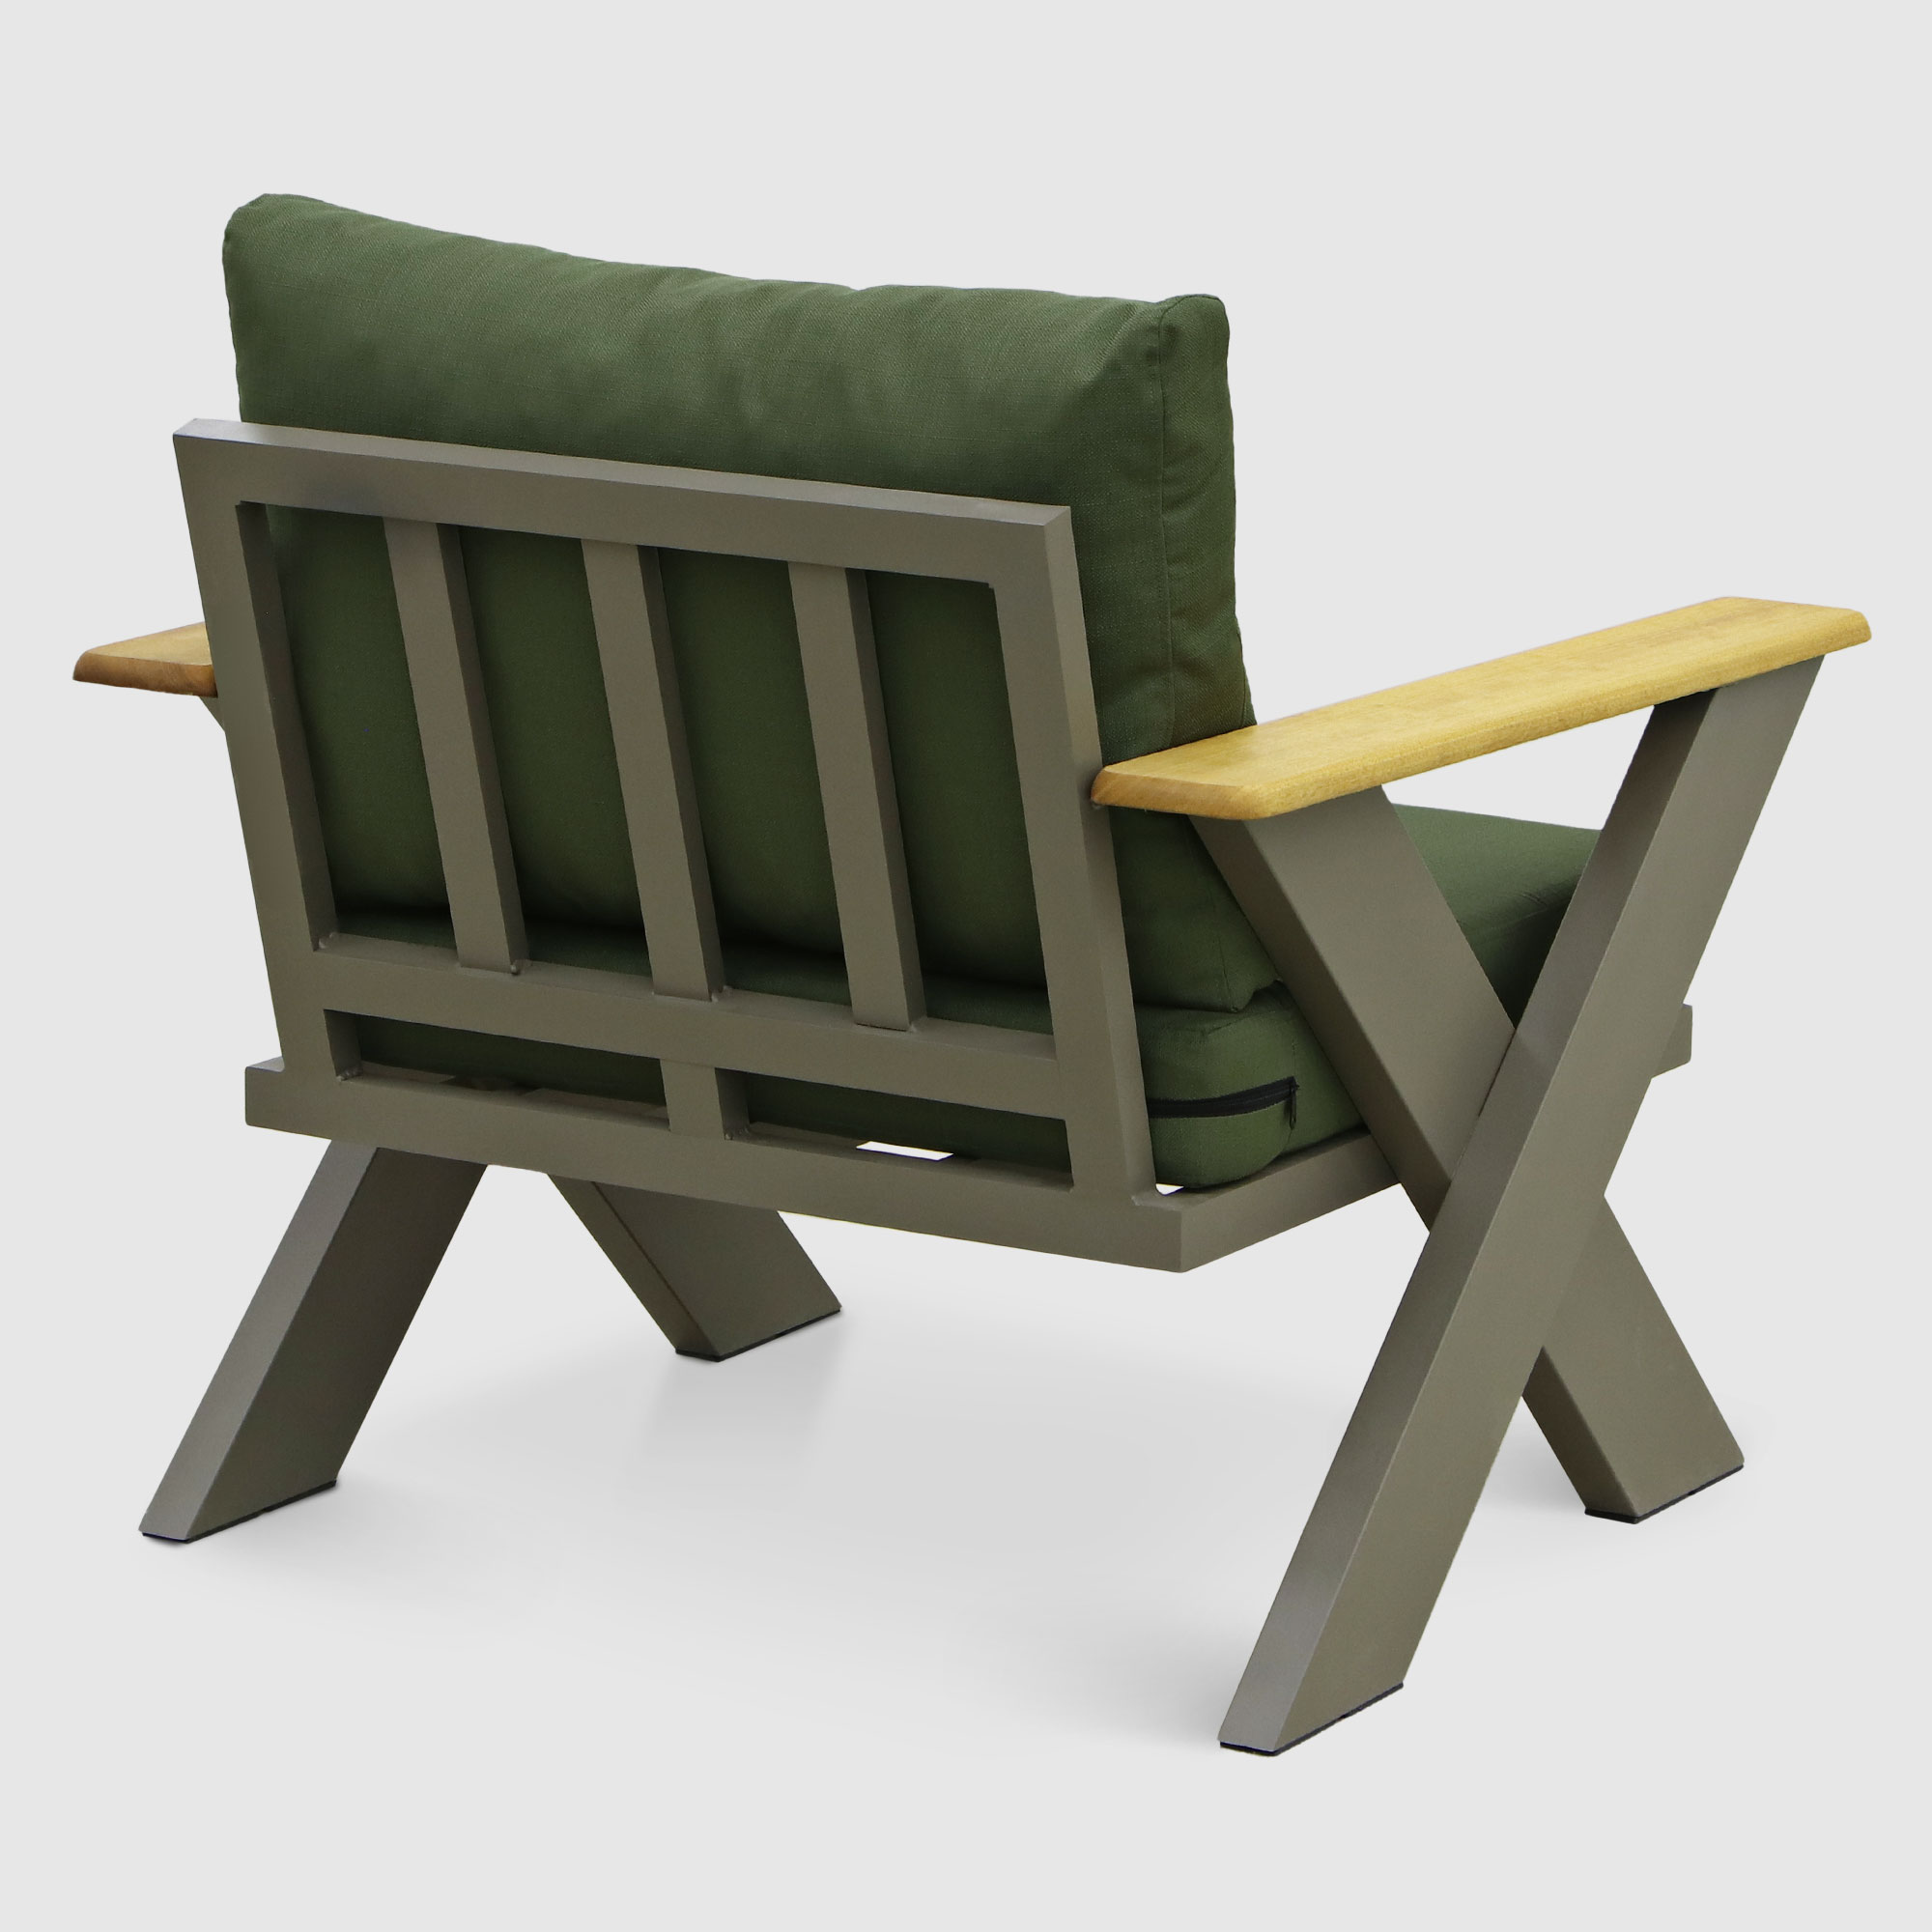 Комплект мебели Emek garden Toledo зеленый 4 предмета, цвет оливковый, размер 170х80х90 - фото 12